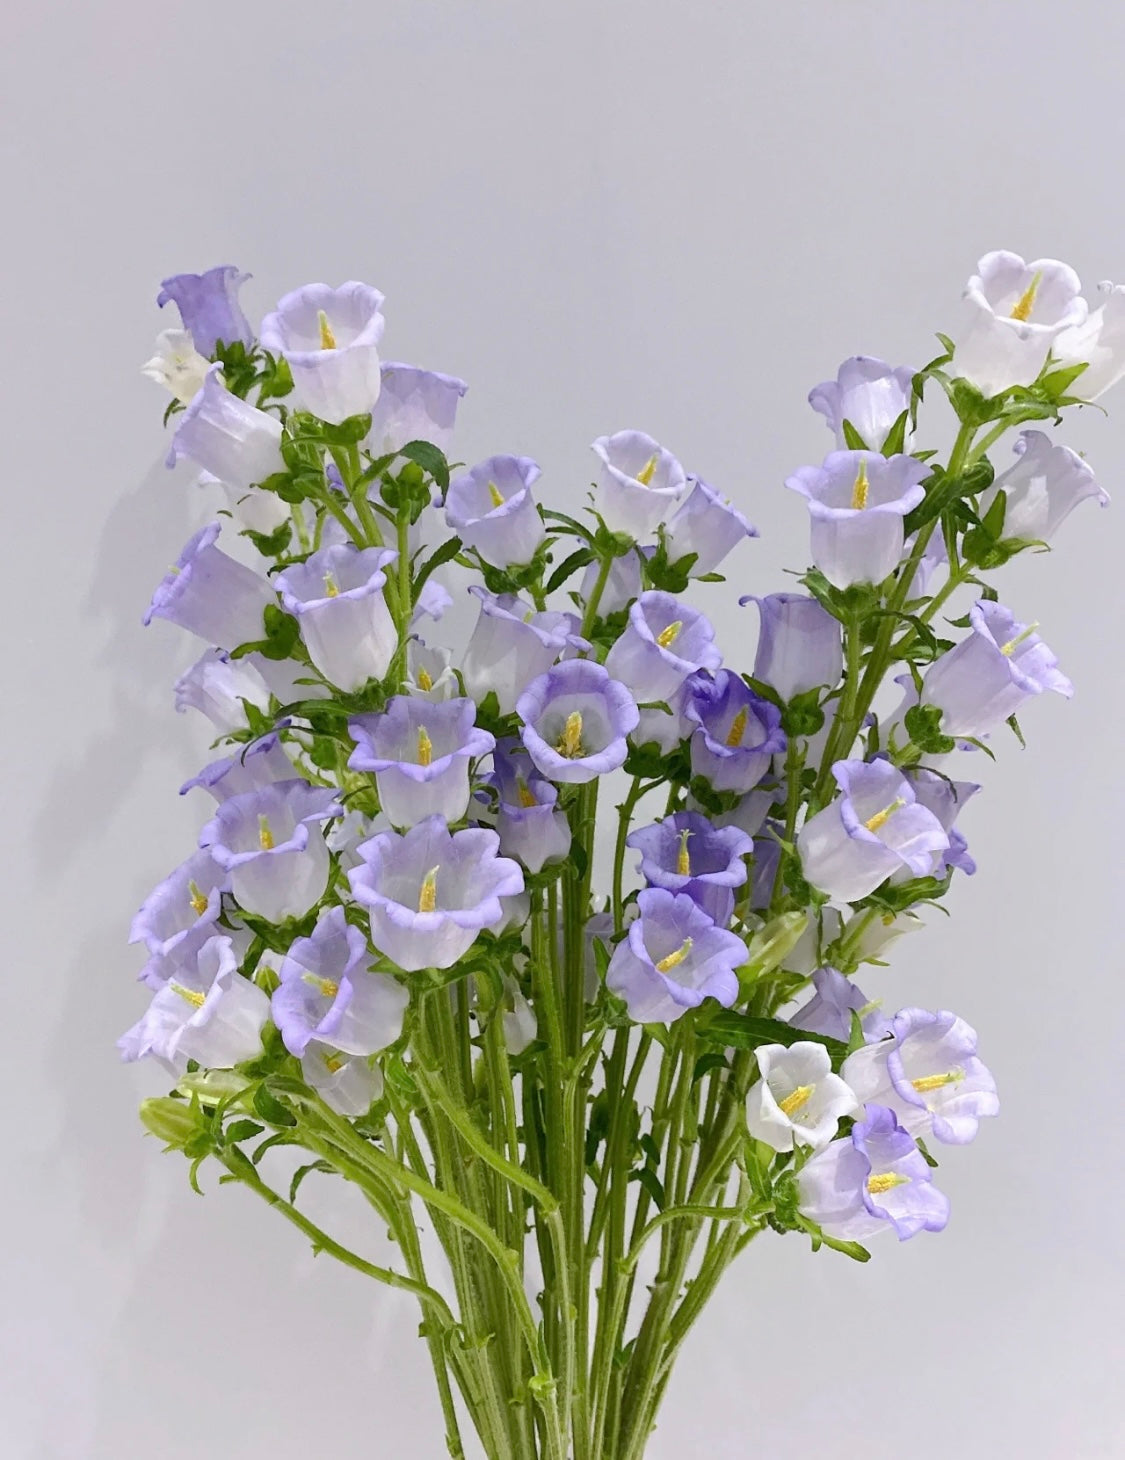 風鈴花是一種優美而迷人的花卉，常被用於製作花束和花環。它們有著粉色、紫色和白色等多種顏色，每種顏色都有其獨特的意義。粉色風鈴花象徵著優雅和溫柔，紫色則象徵著神秘和神聖。白色風鈴花則象徵著純潔和清爽。風鈴花還有著芳香的香味，讓人心情愉悅。它們是用於婚禮和其他重要場合的理想花卉。送給摯愛一束風鈴花，讓他們感受你的愛和關懷。立即下單，讓風鈴花的美麗和芬芳，為你帶來幸福和甜蜜。